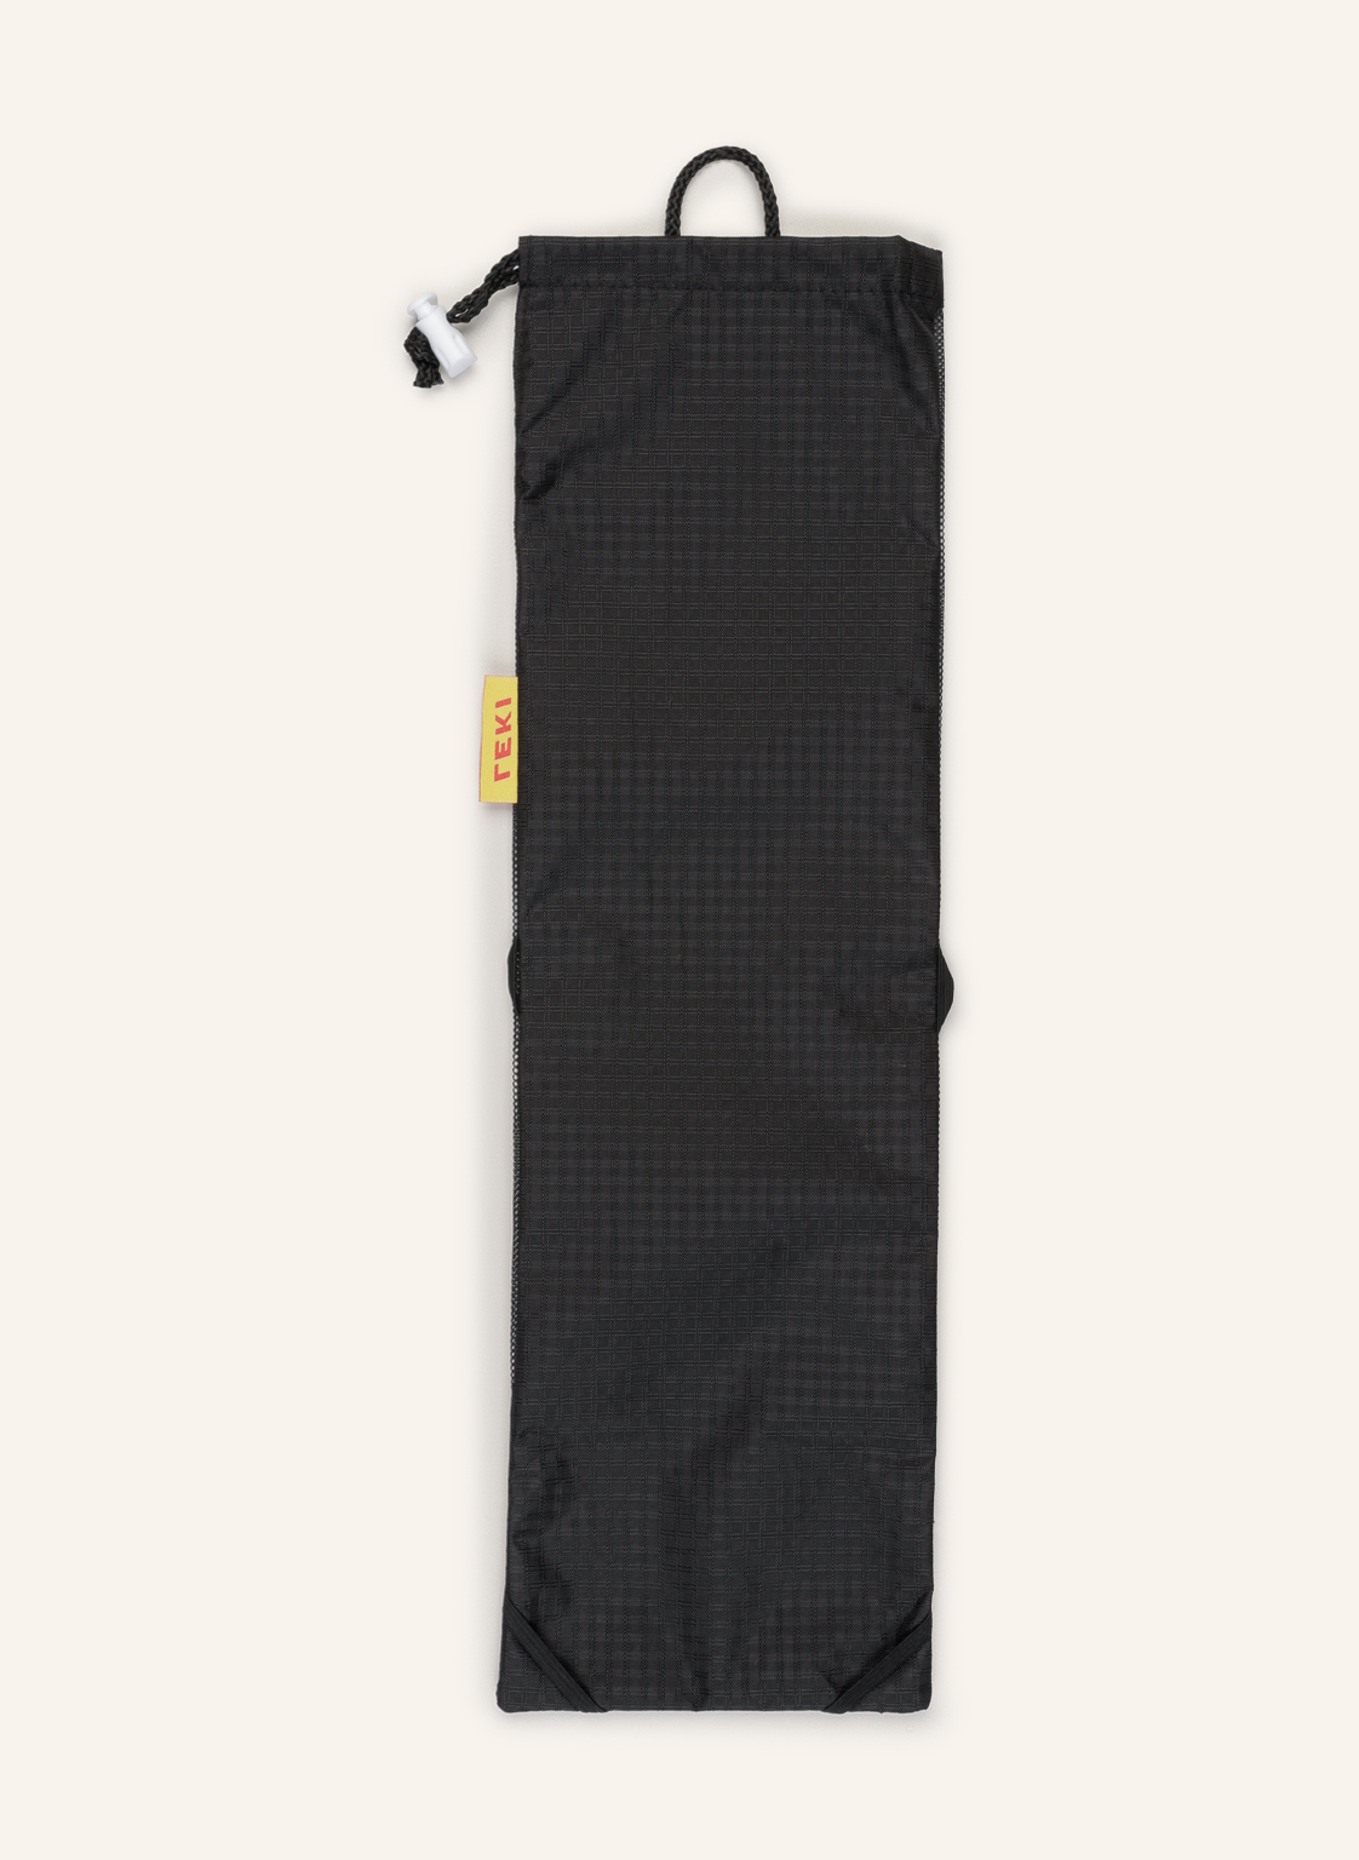 LEKI Bag for folding poles, Color: BLACK (Image 2)